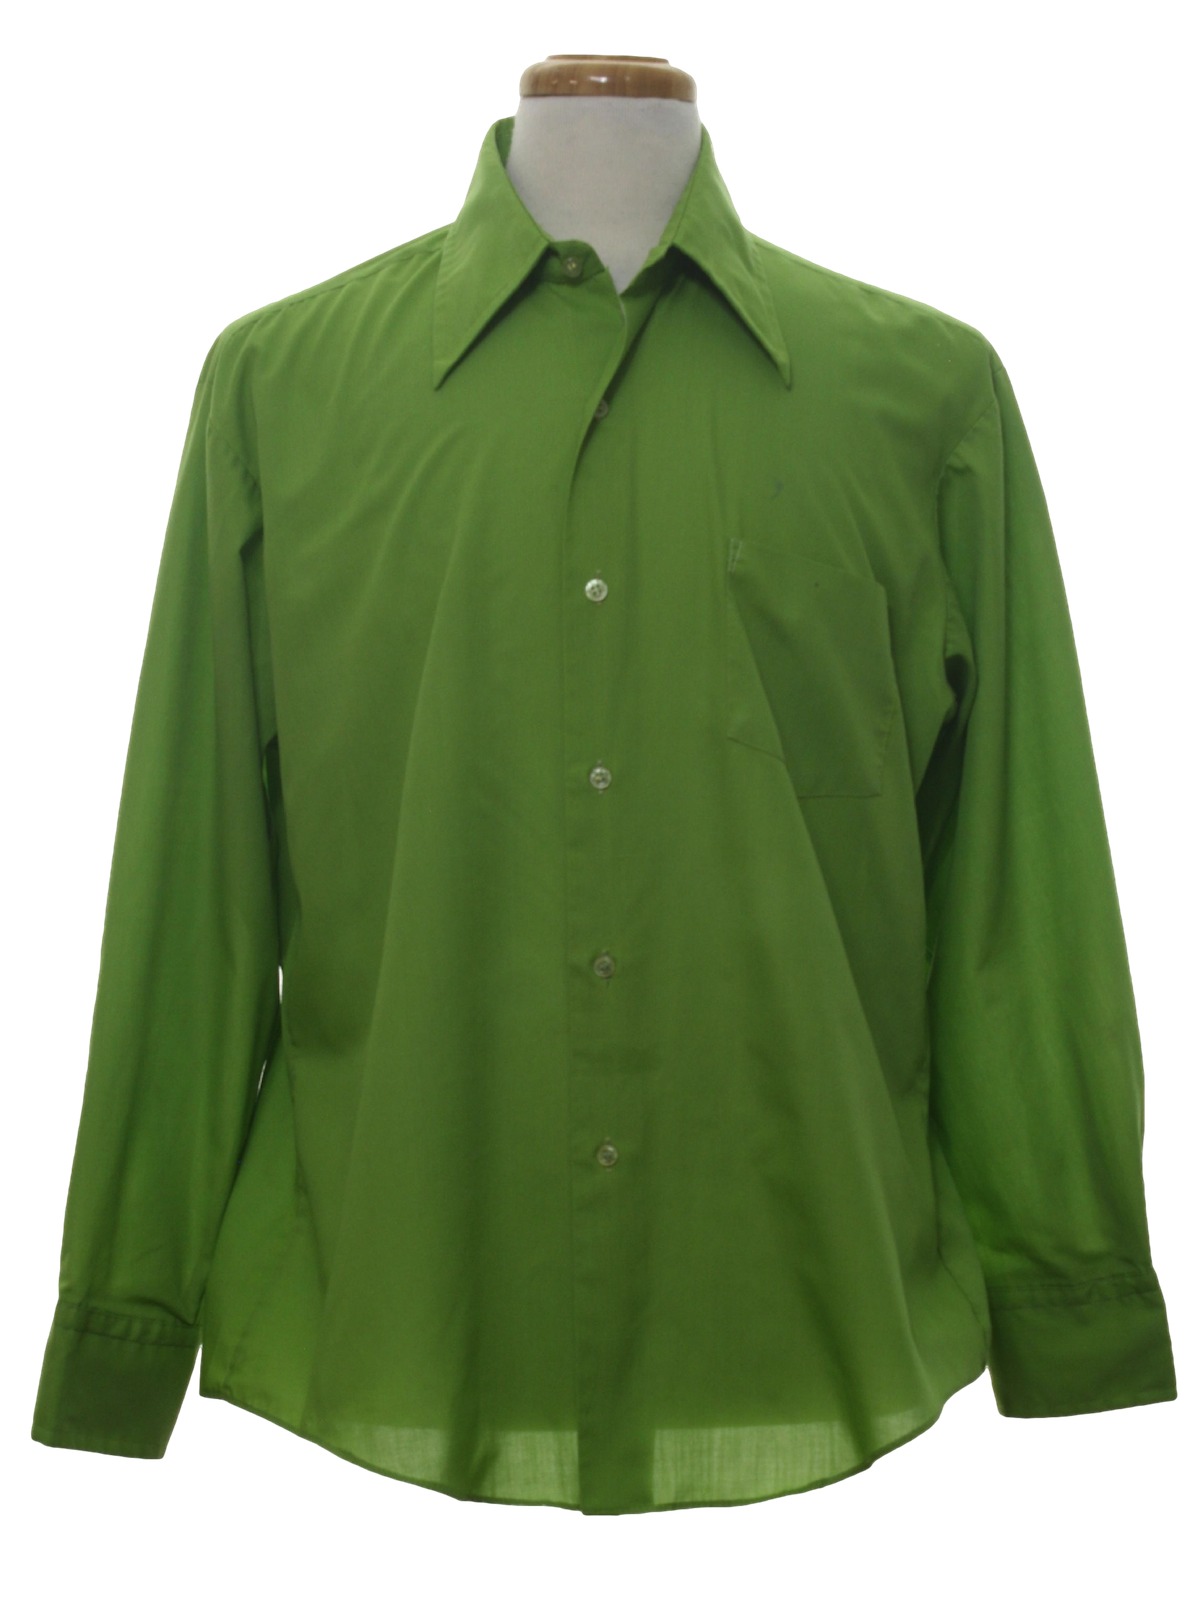 Vintage KMart 1970s Shirt: 70s -KMart- Mens avocado, blended cotton ...